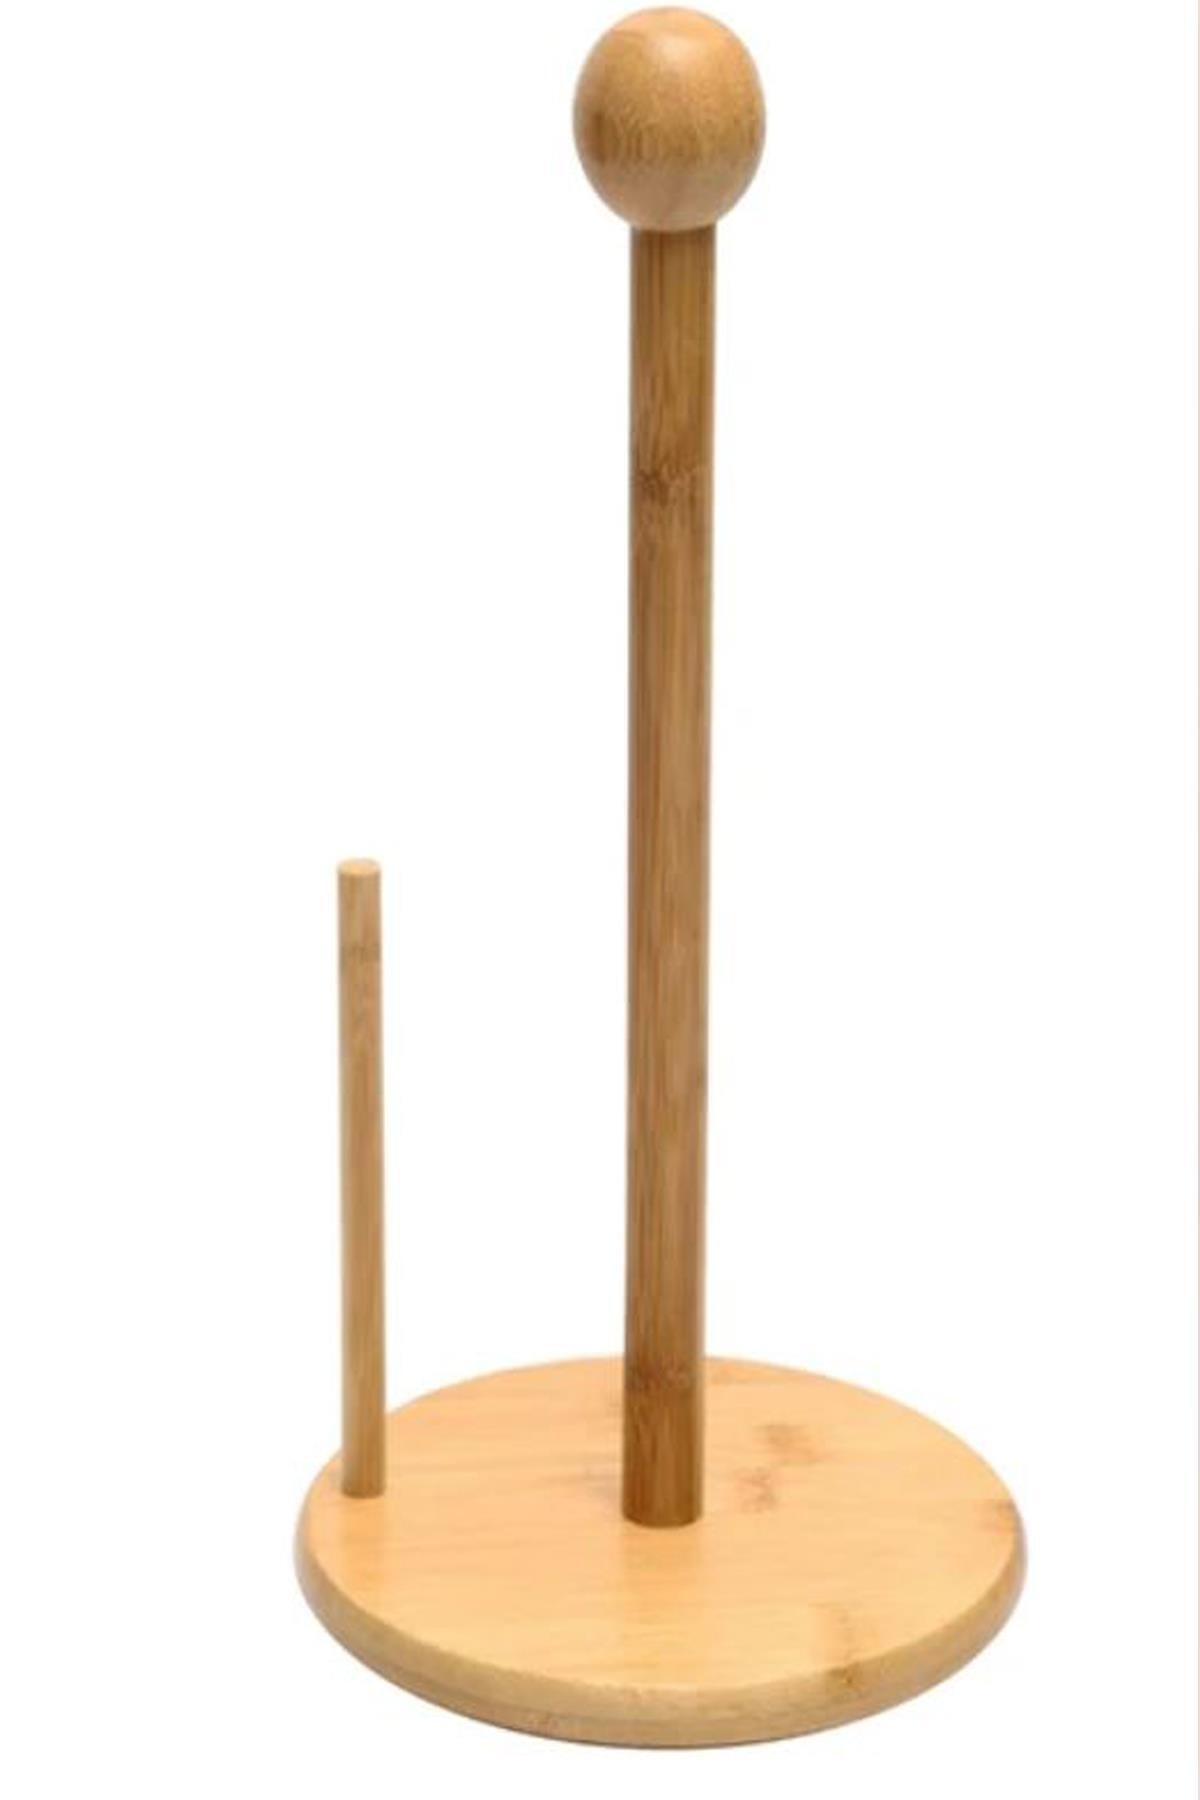 ALBETTO Bambu Dik Havluluk Kağıt Havluluk Yuvarlak 35cm